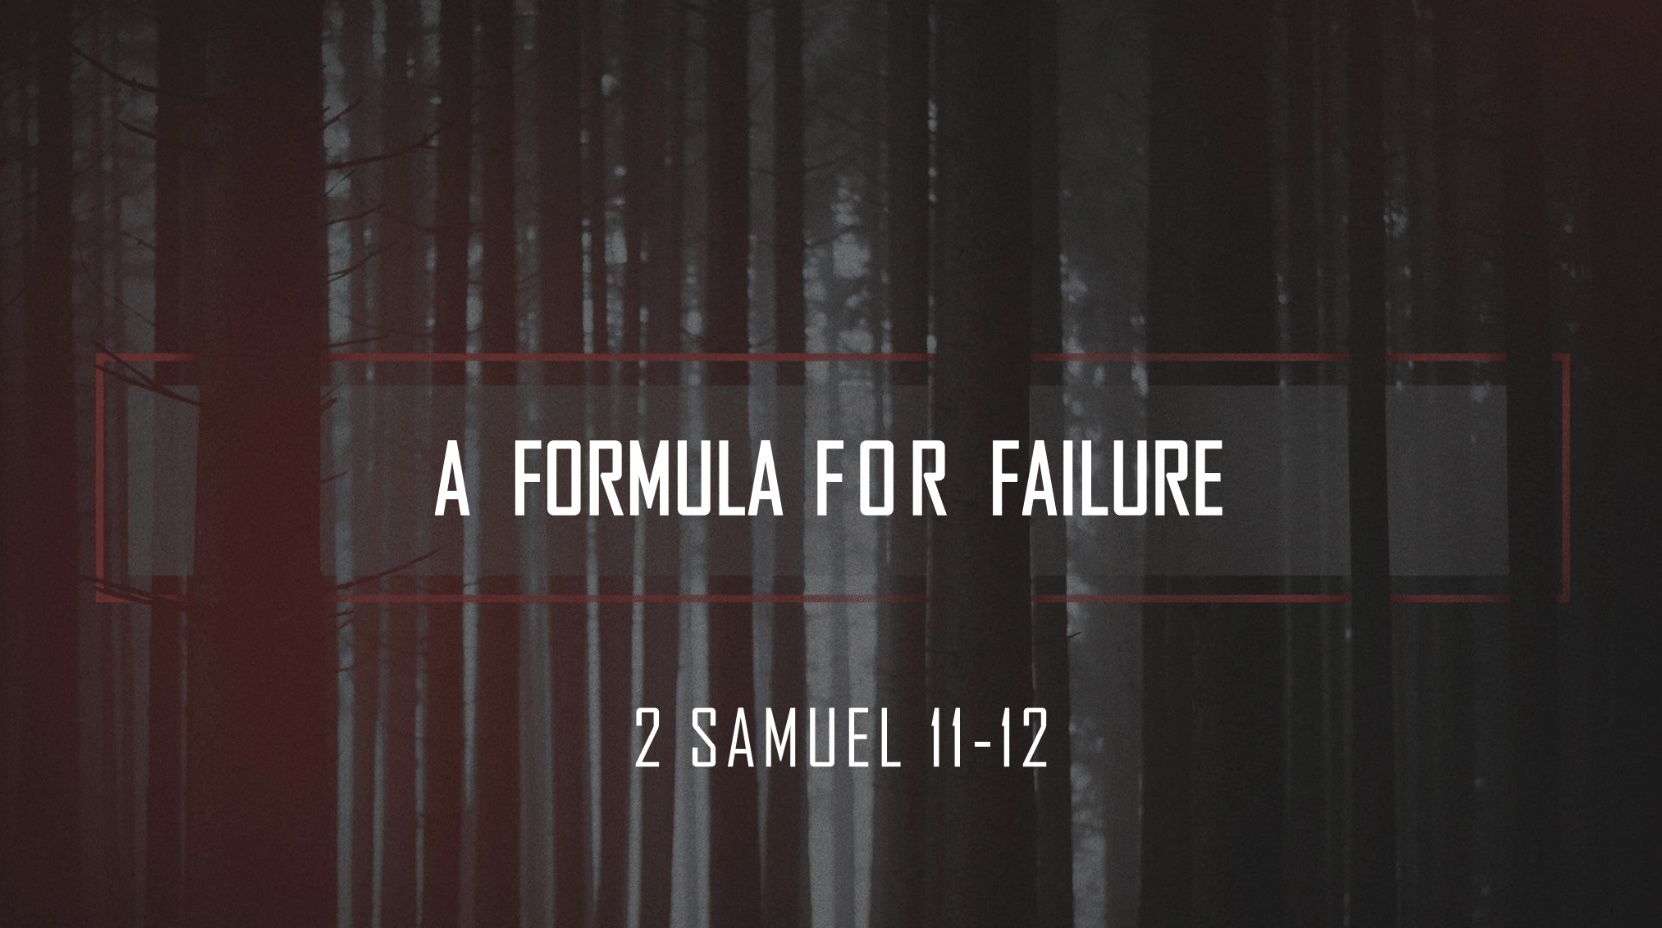 A FORMULA FOR FAILURE